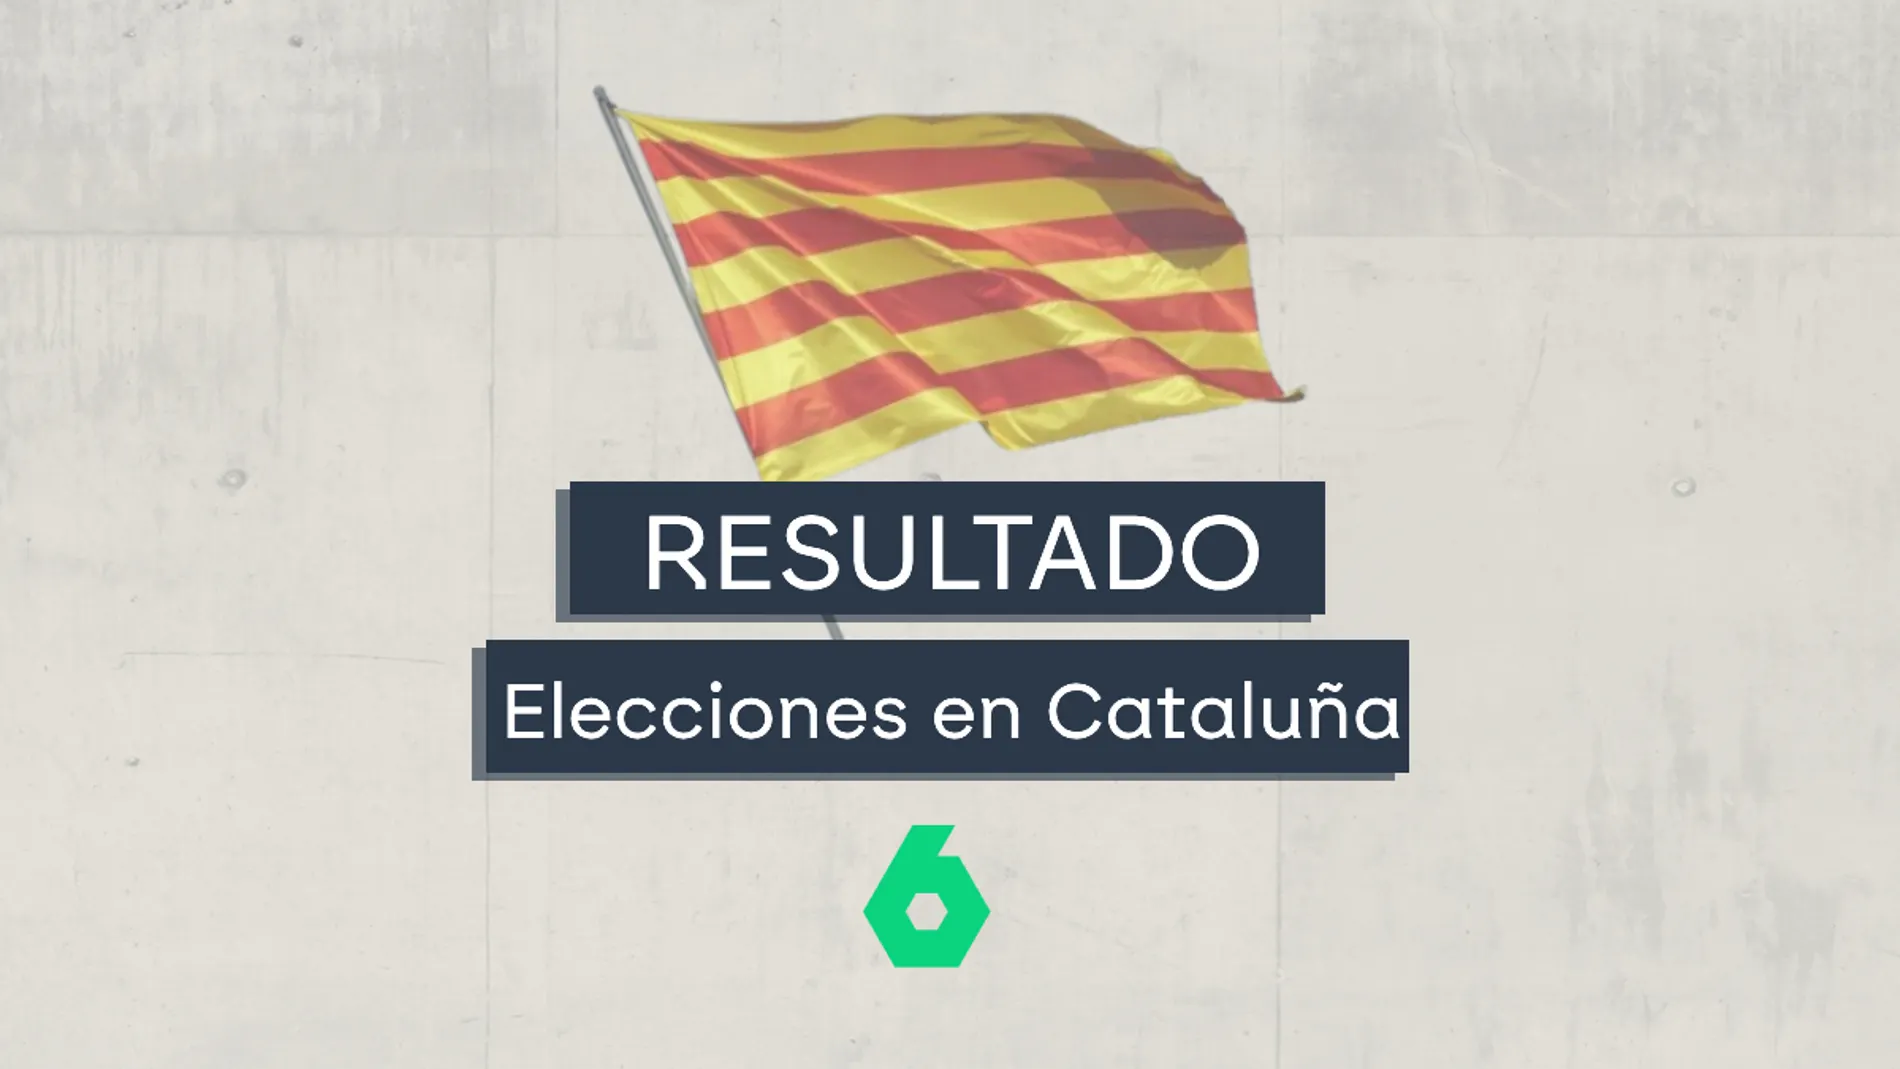 Elecciones Cataluña: resultados, datos de participación y partidos más votados